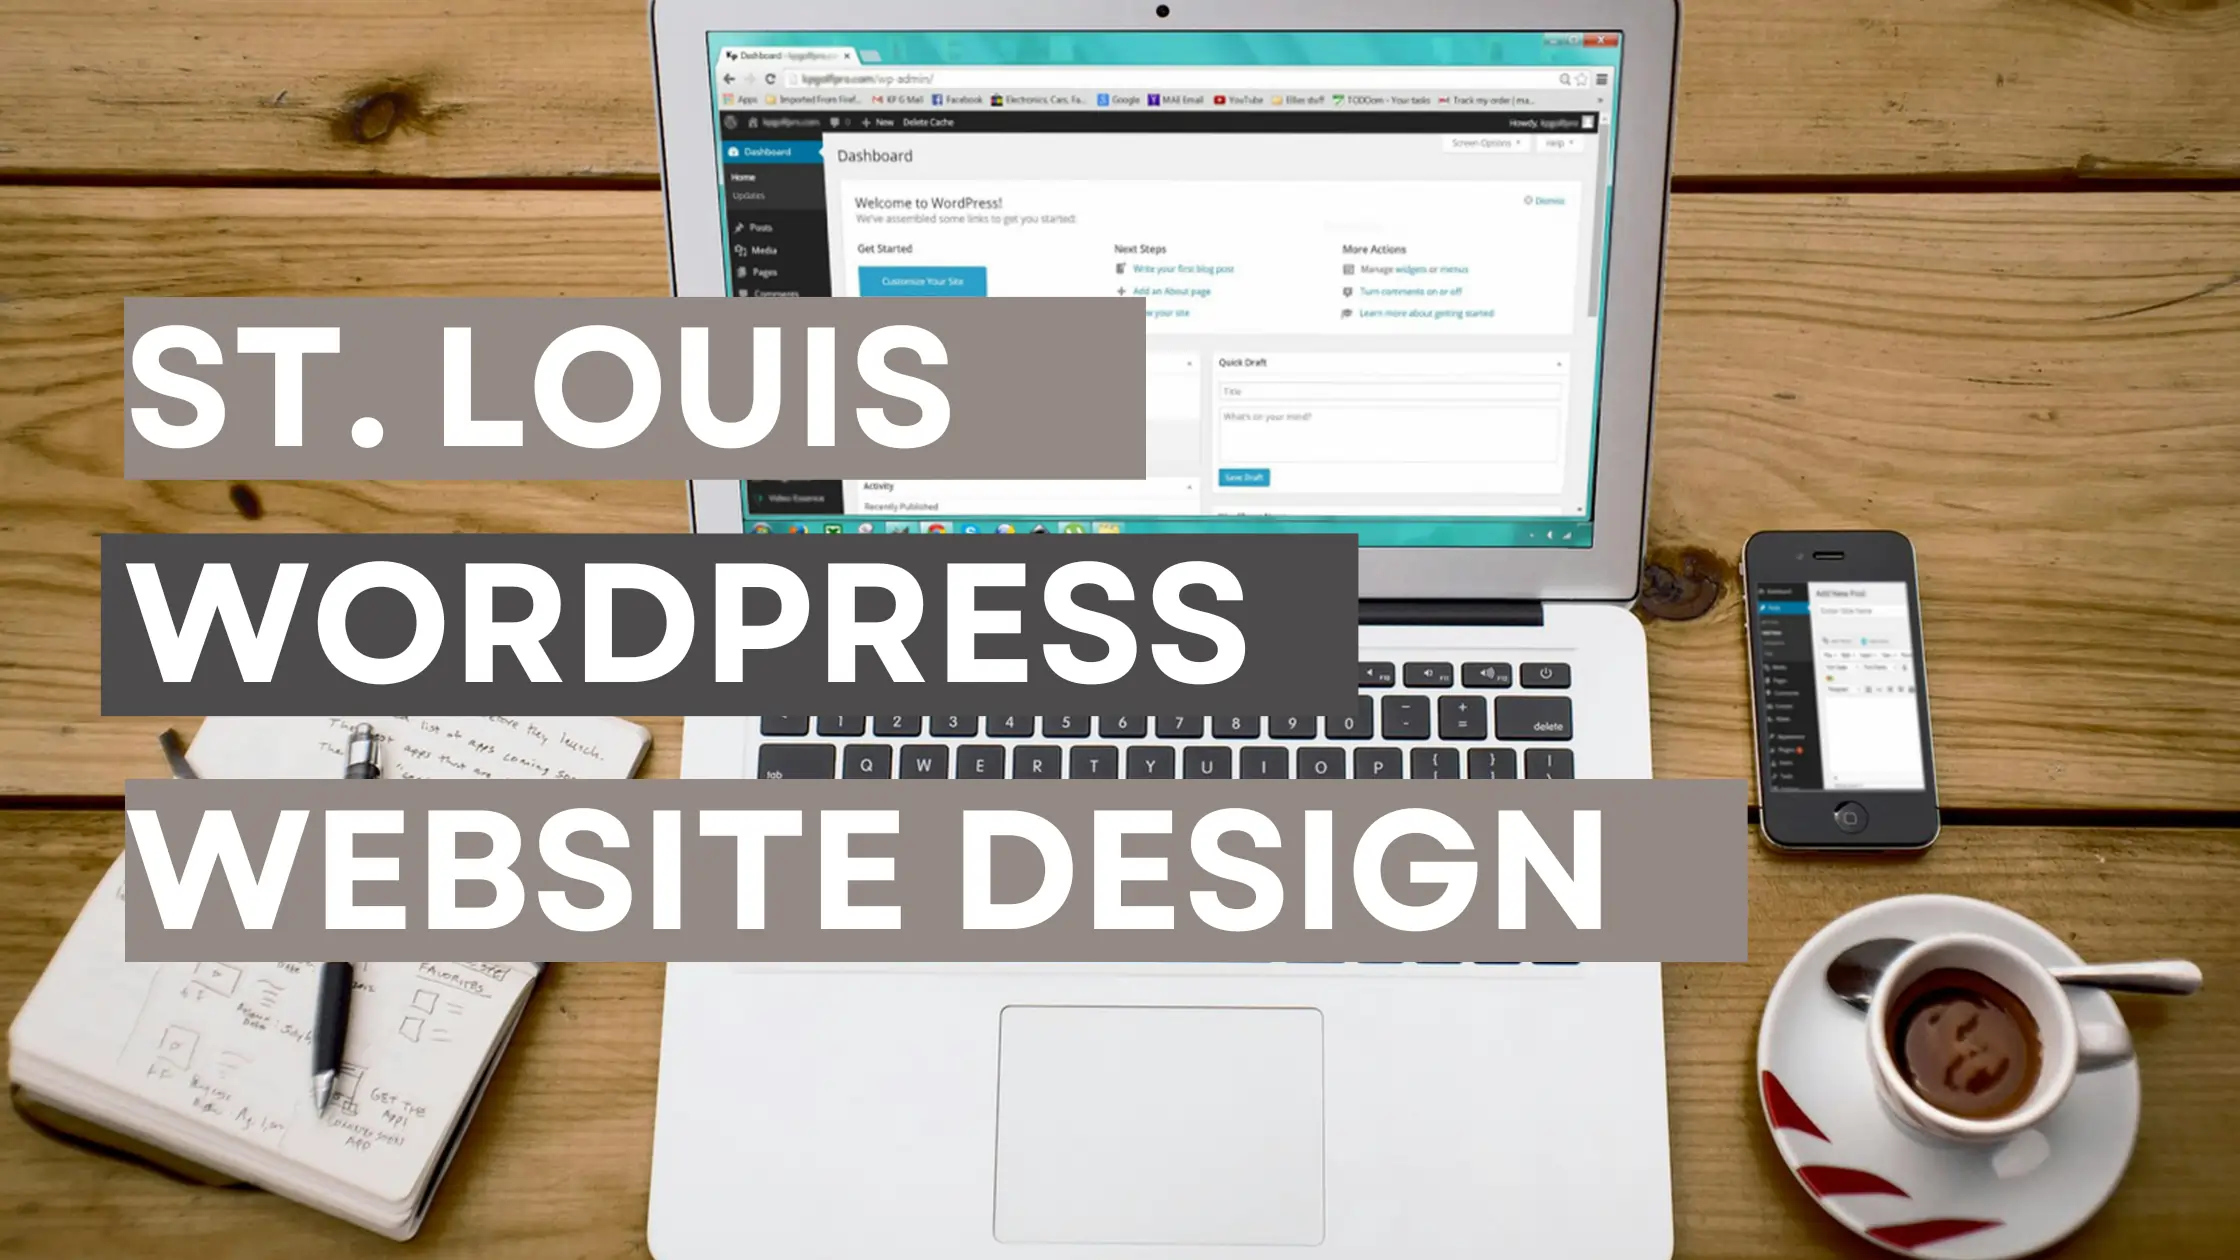 St Louis WordPress Website Design Services